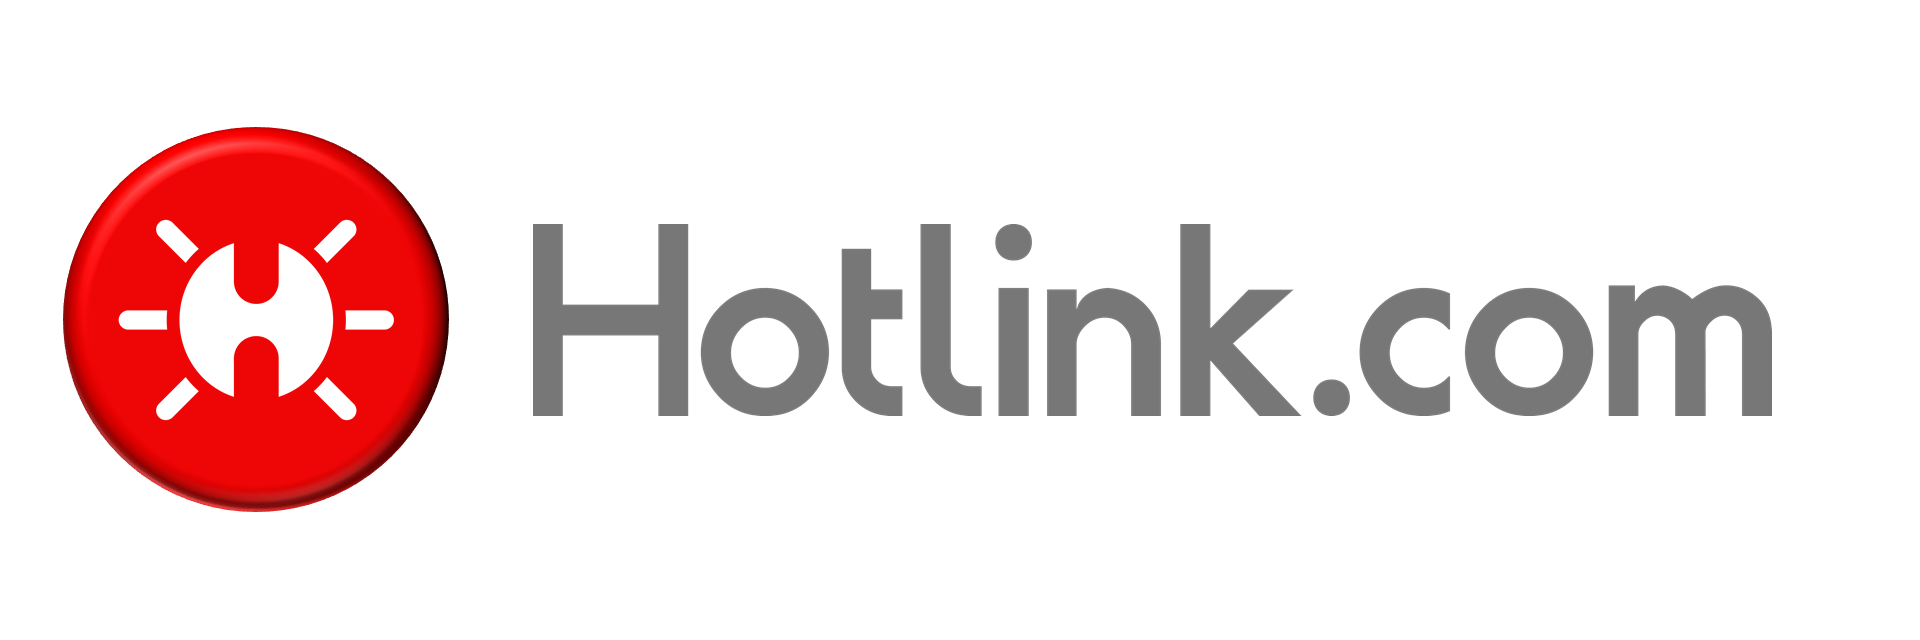 Hotlink.com